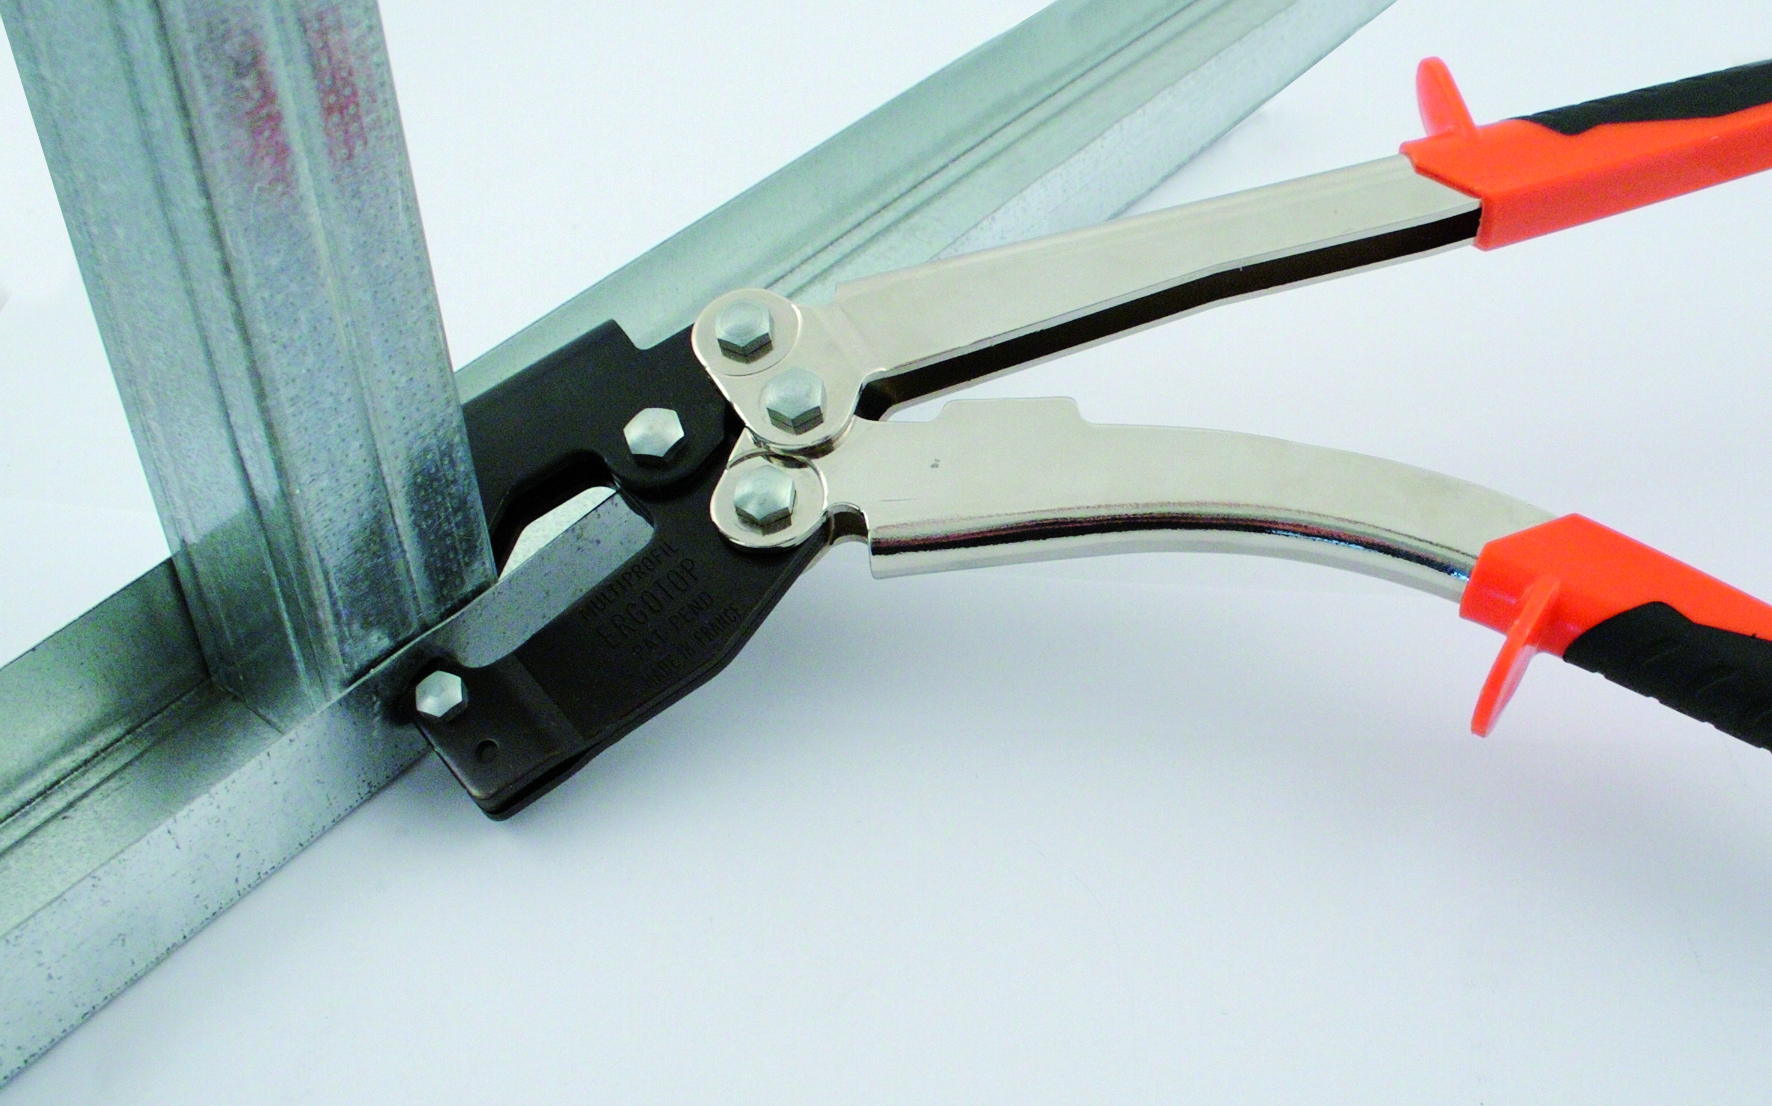 Перечень инструментов для монтажа гипсокартона | онлайн-журнал о ремонте и дизайне